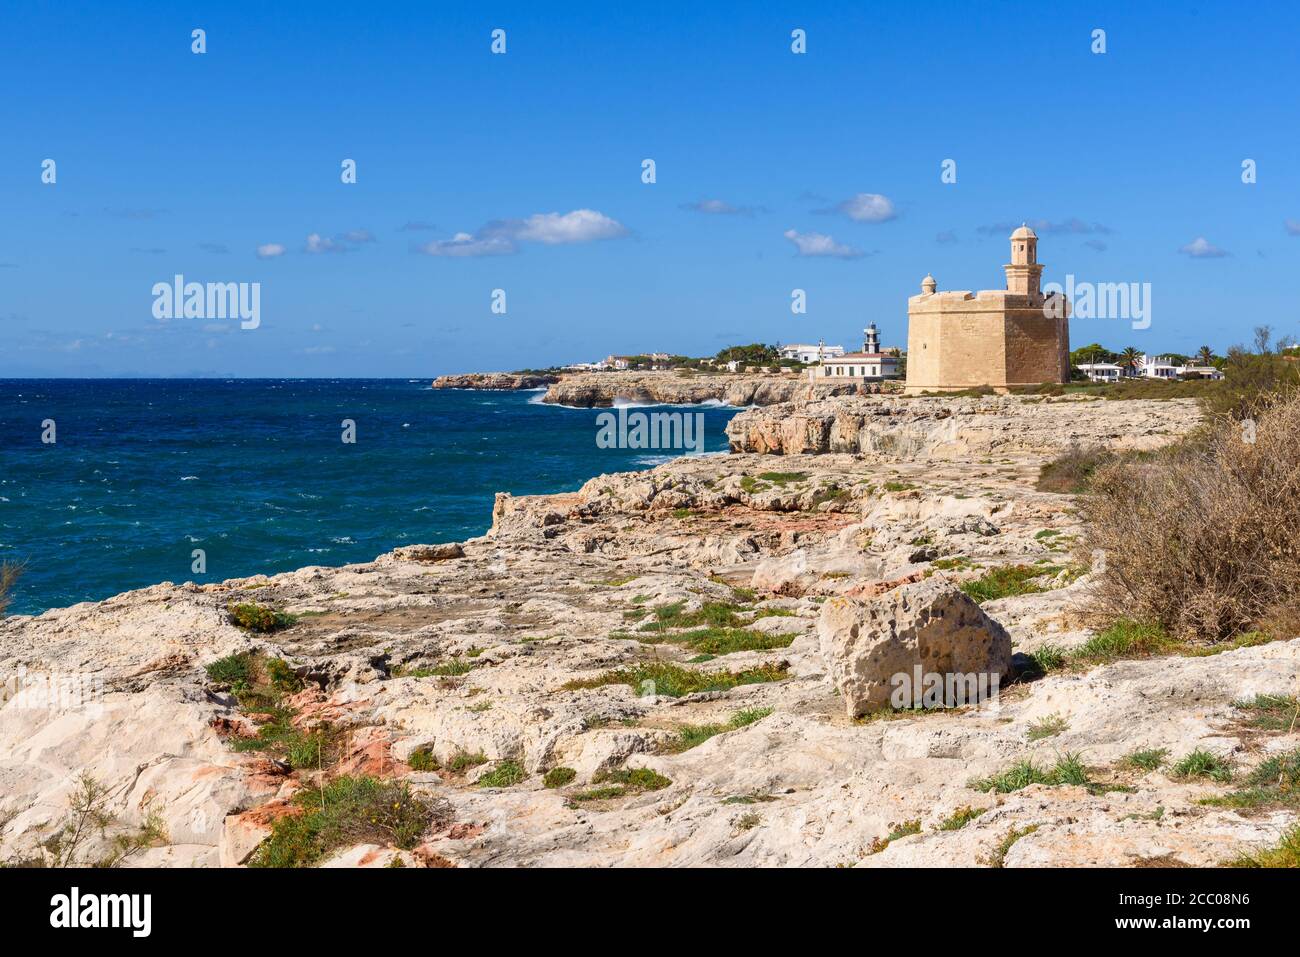 La costa oeste de Menorca, una de las Islas Baleares españolas. Foto de stock